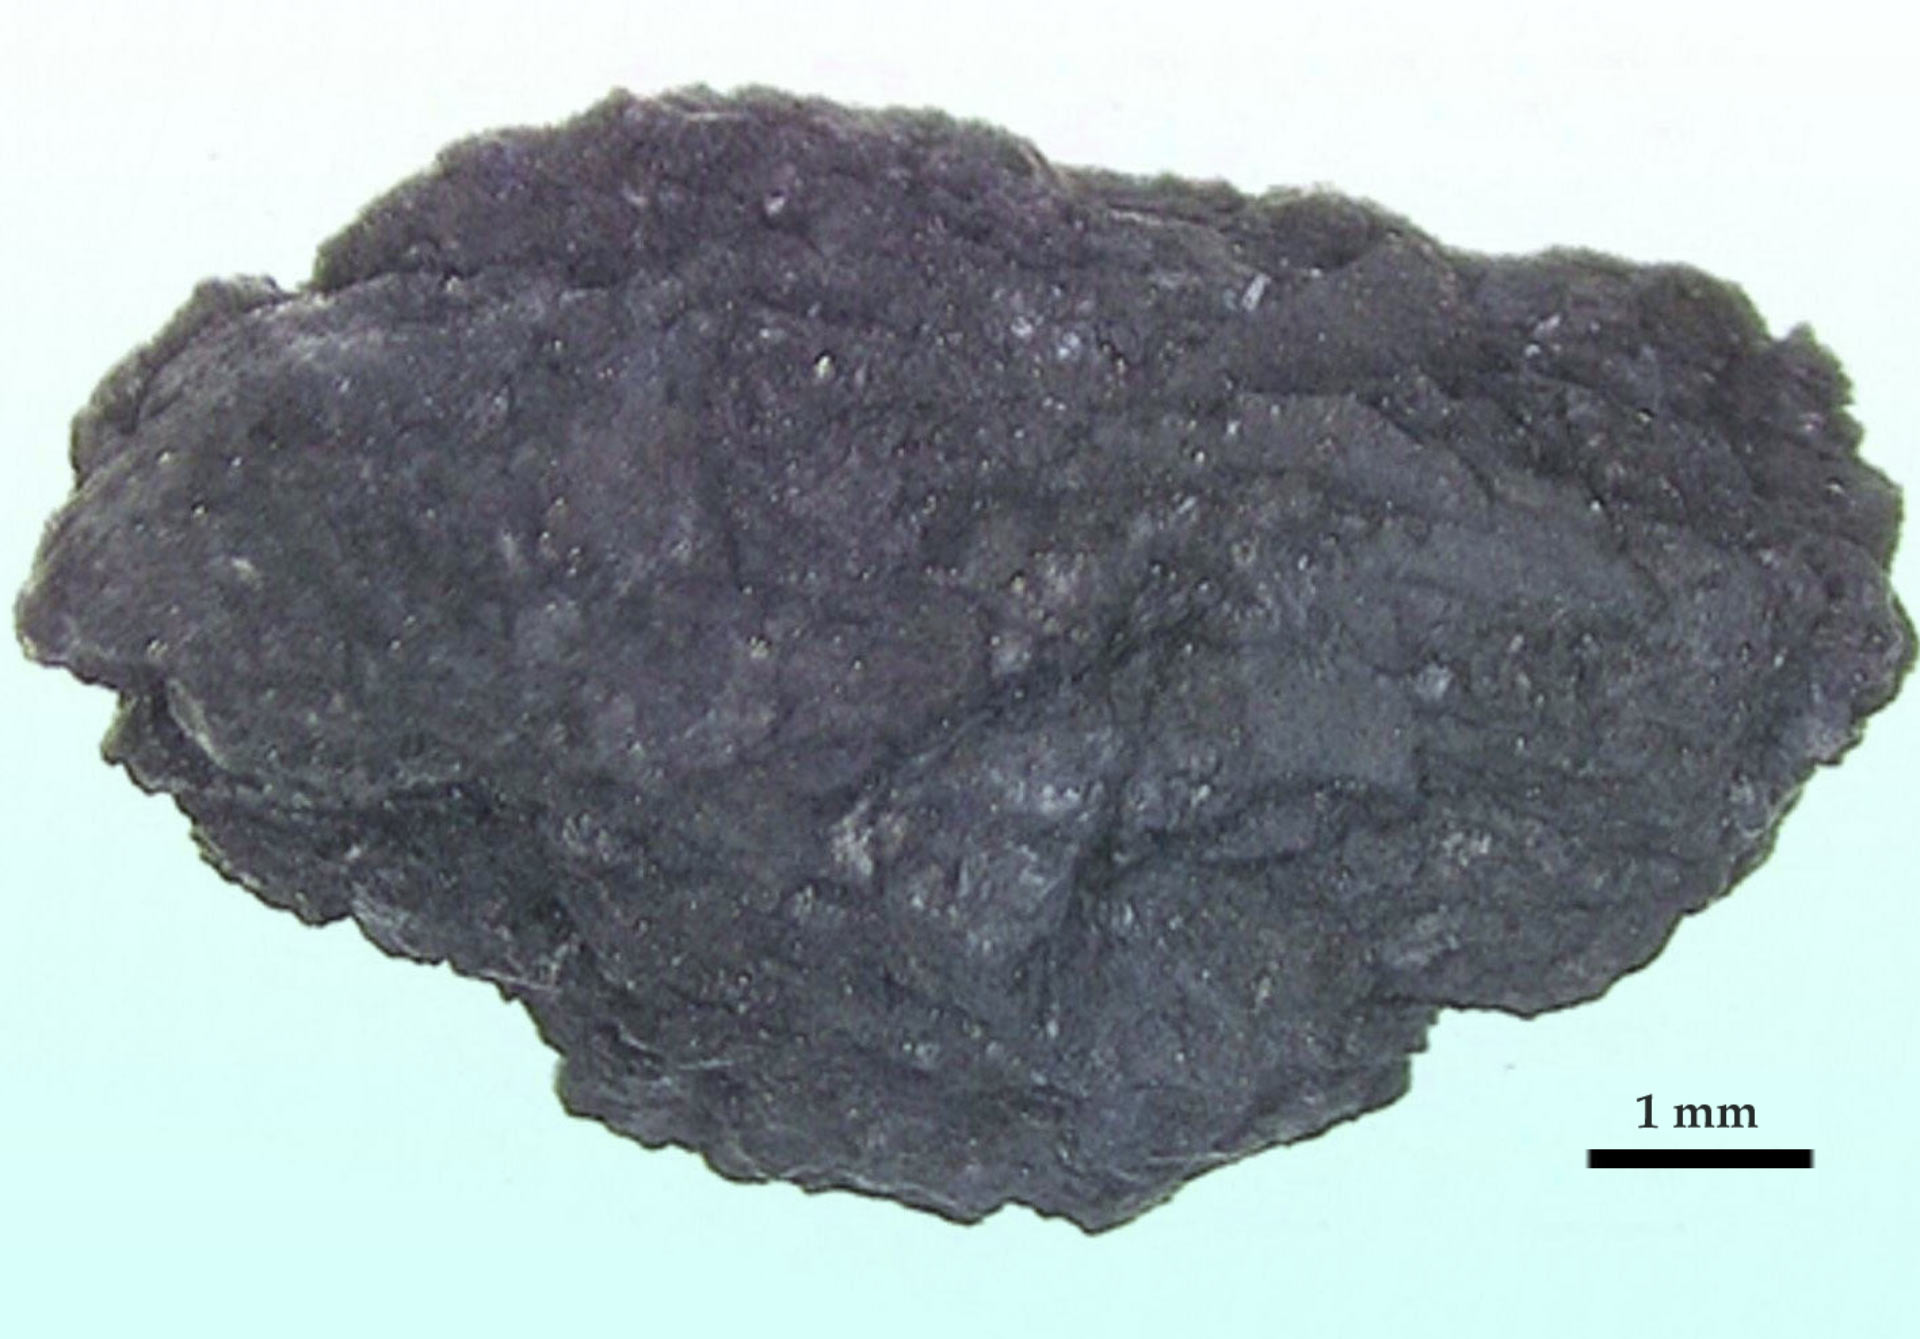 Оптическая микрофотография крупнейшего образца астероида Рюгу, проанализированного ученым